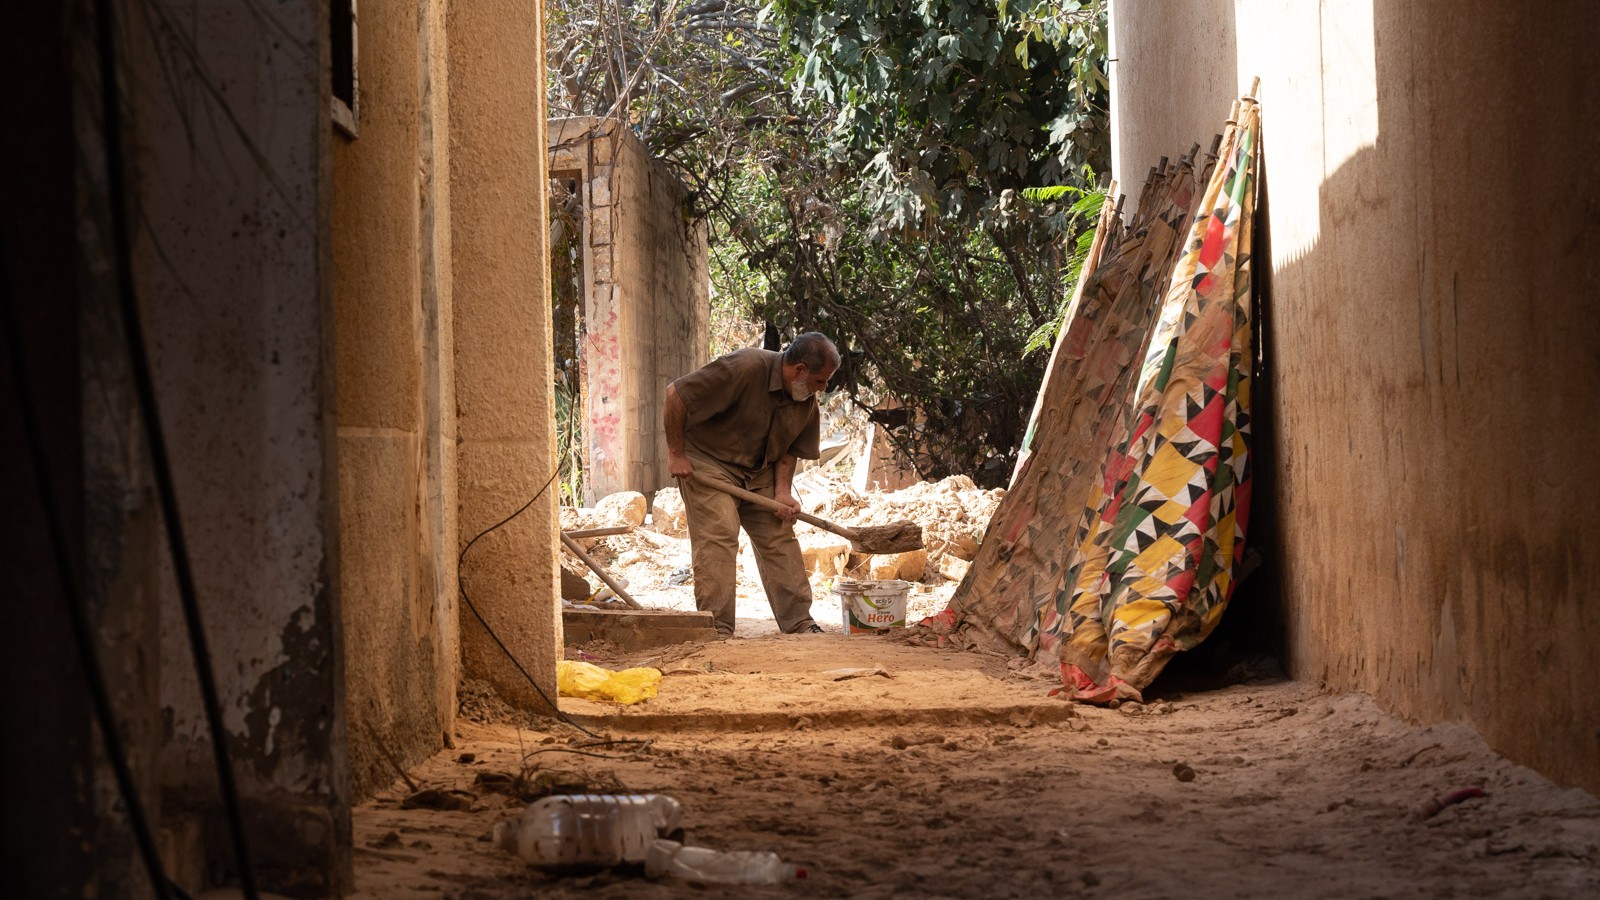 Atiya cleans the mud outside his home in Derna, Libya (MEE/Taha Jawashi)